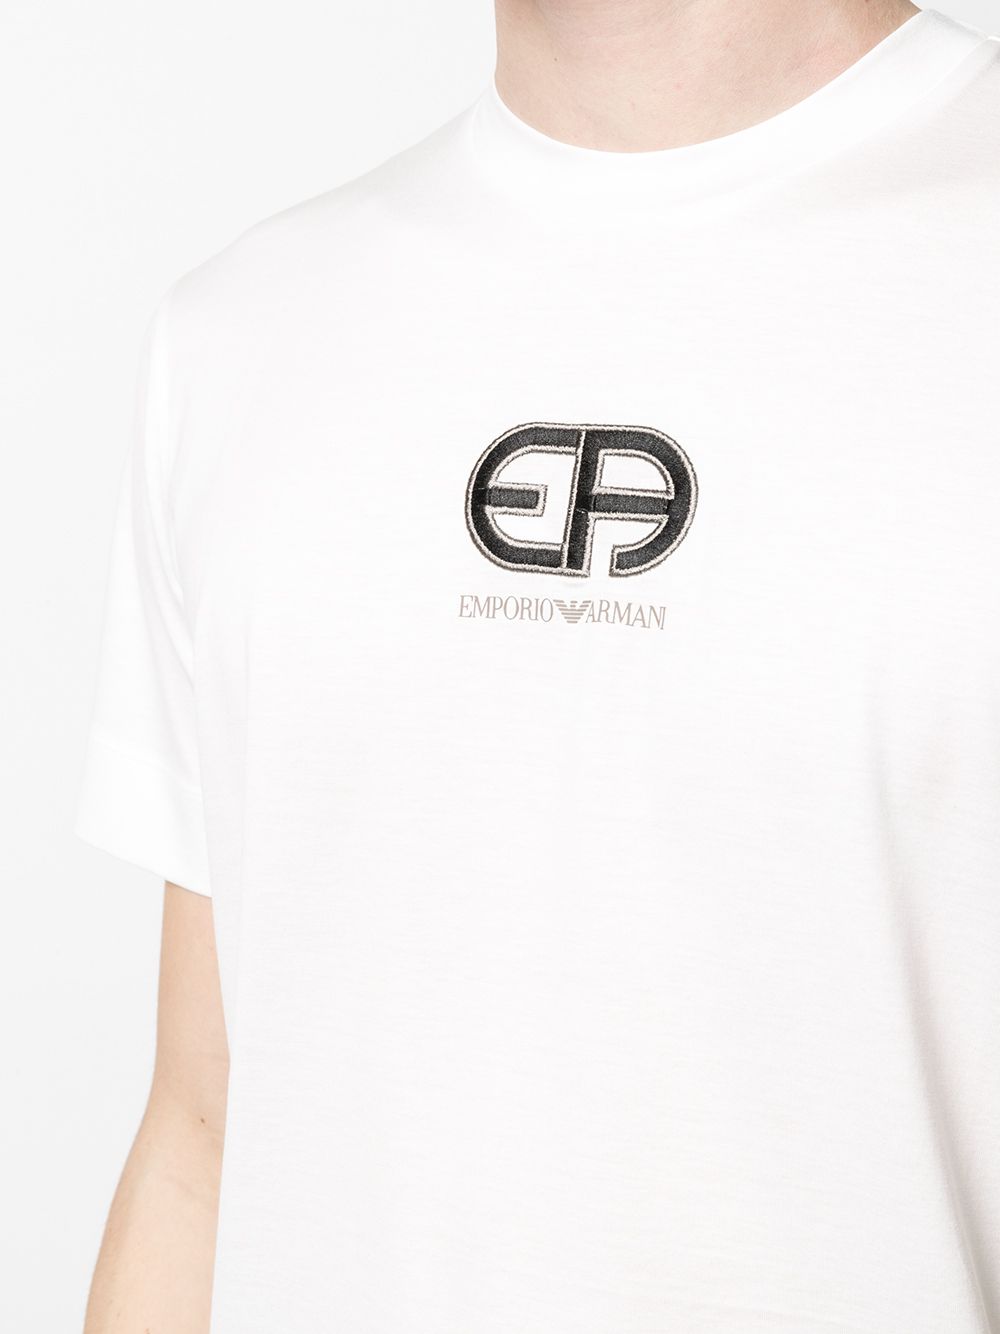 фото Emporio armani футболка с вышитым логотипом